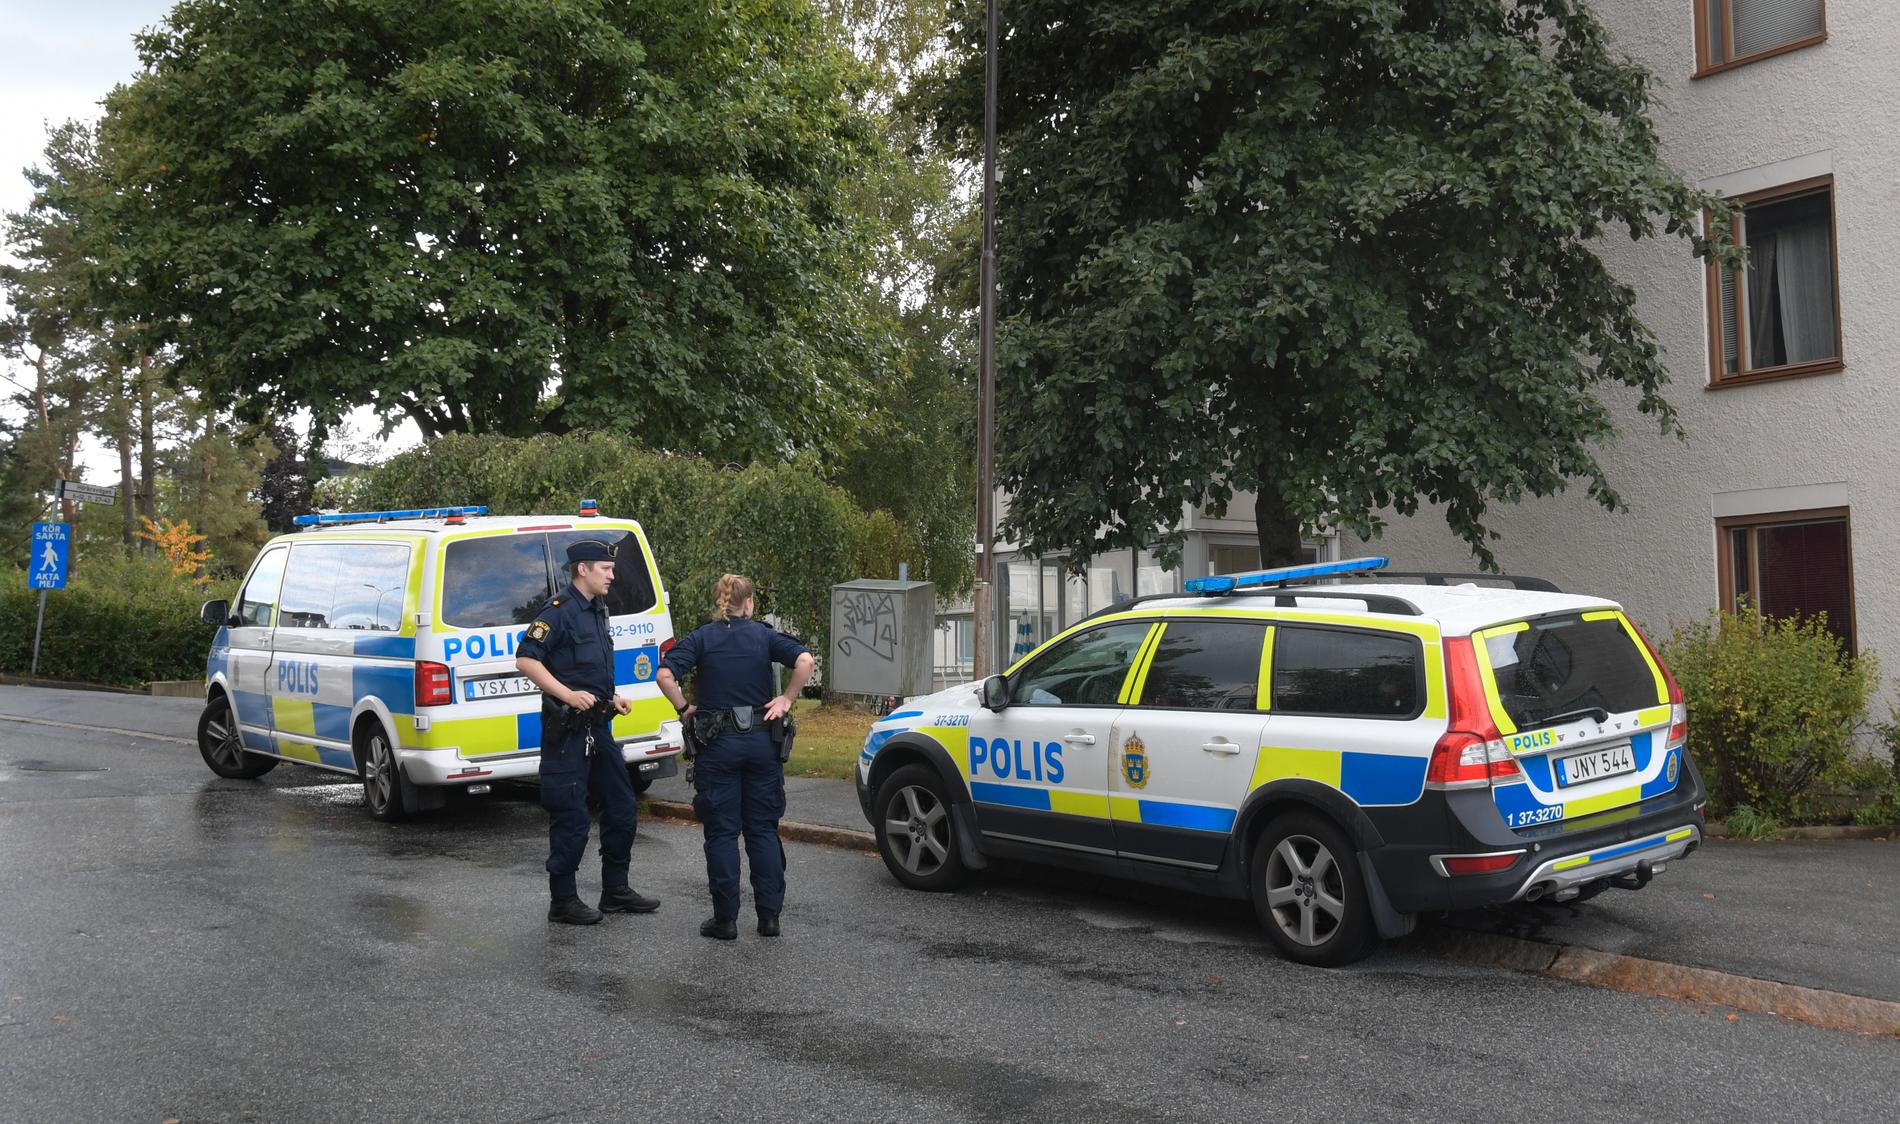 Polisen är just nu på plats i Skogås i Huddinge kommun och utreder ett grovt rån.